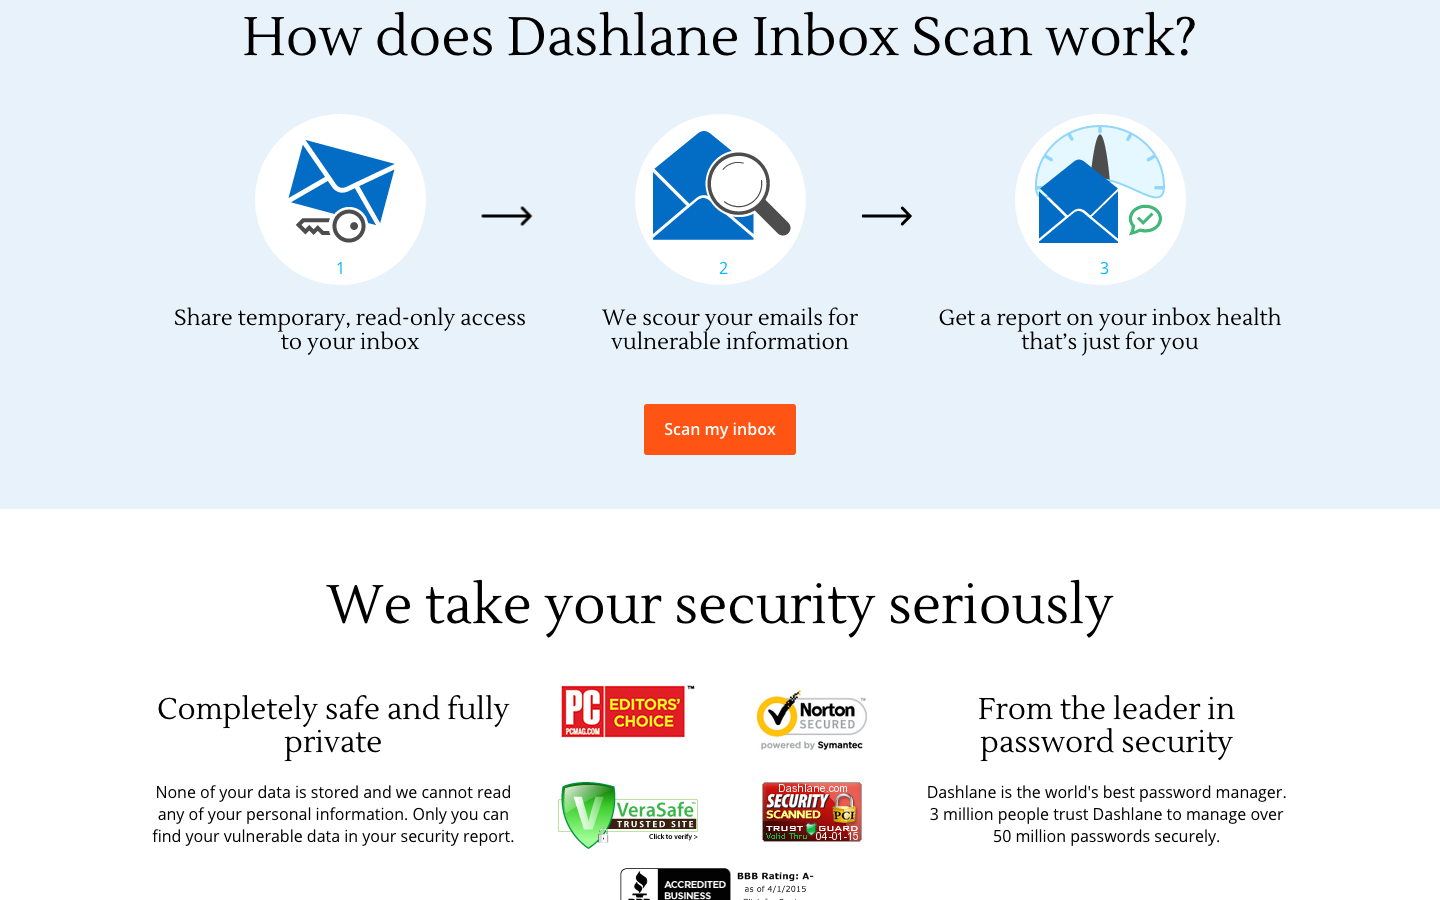 Dashlane Inbox Scan 4